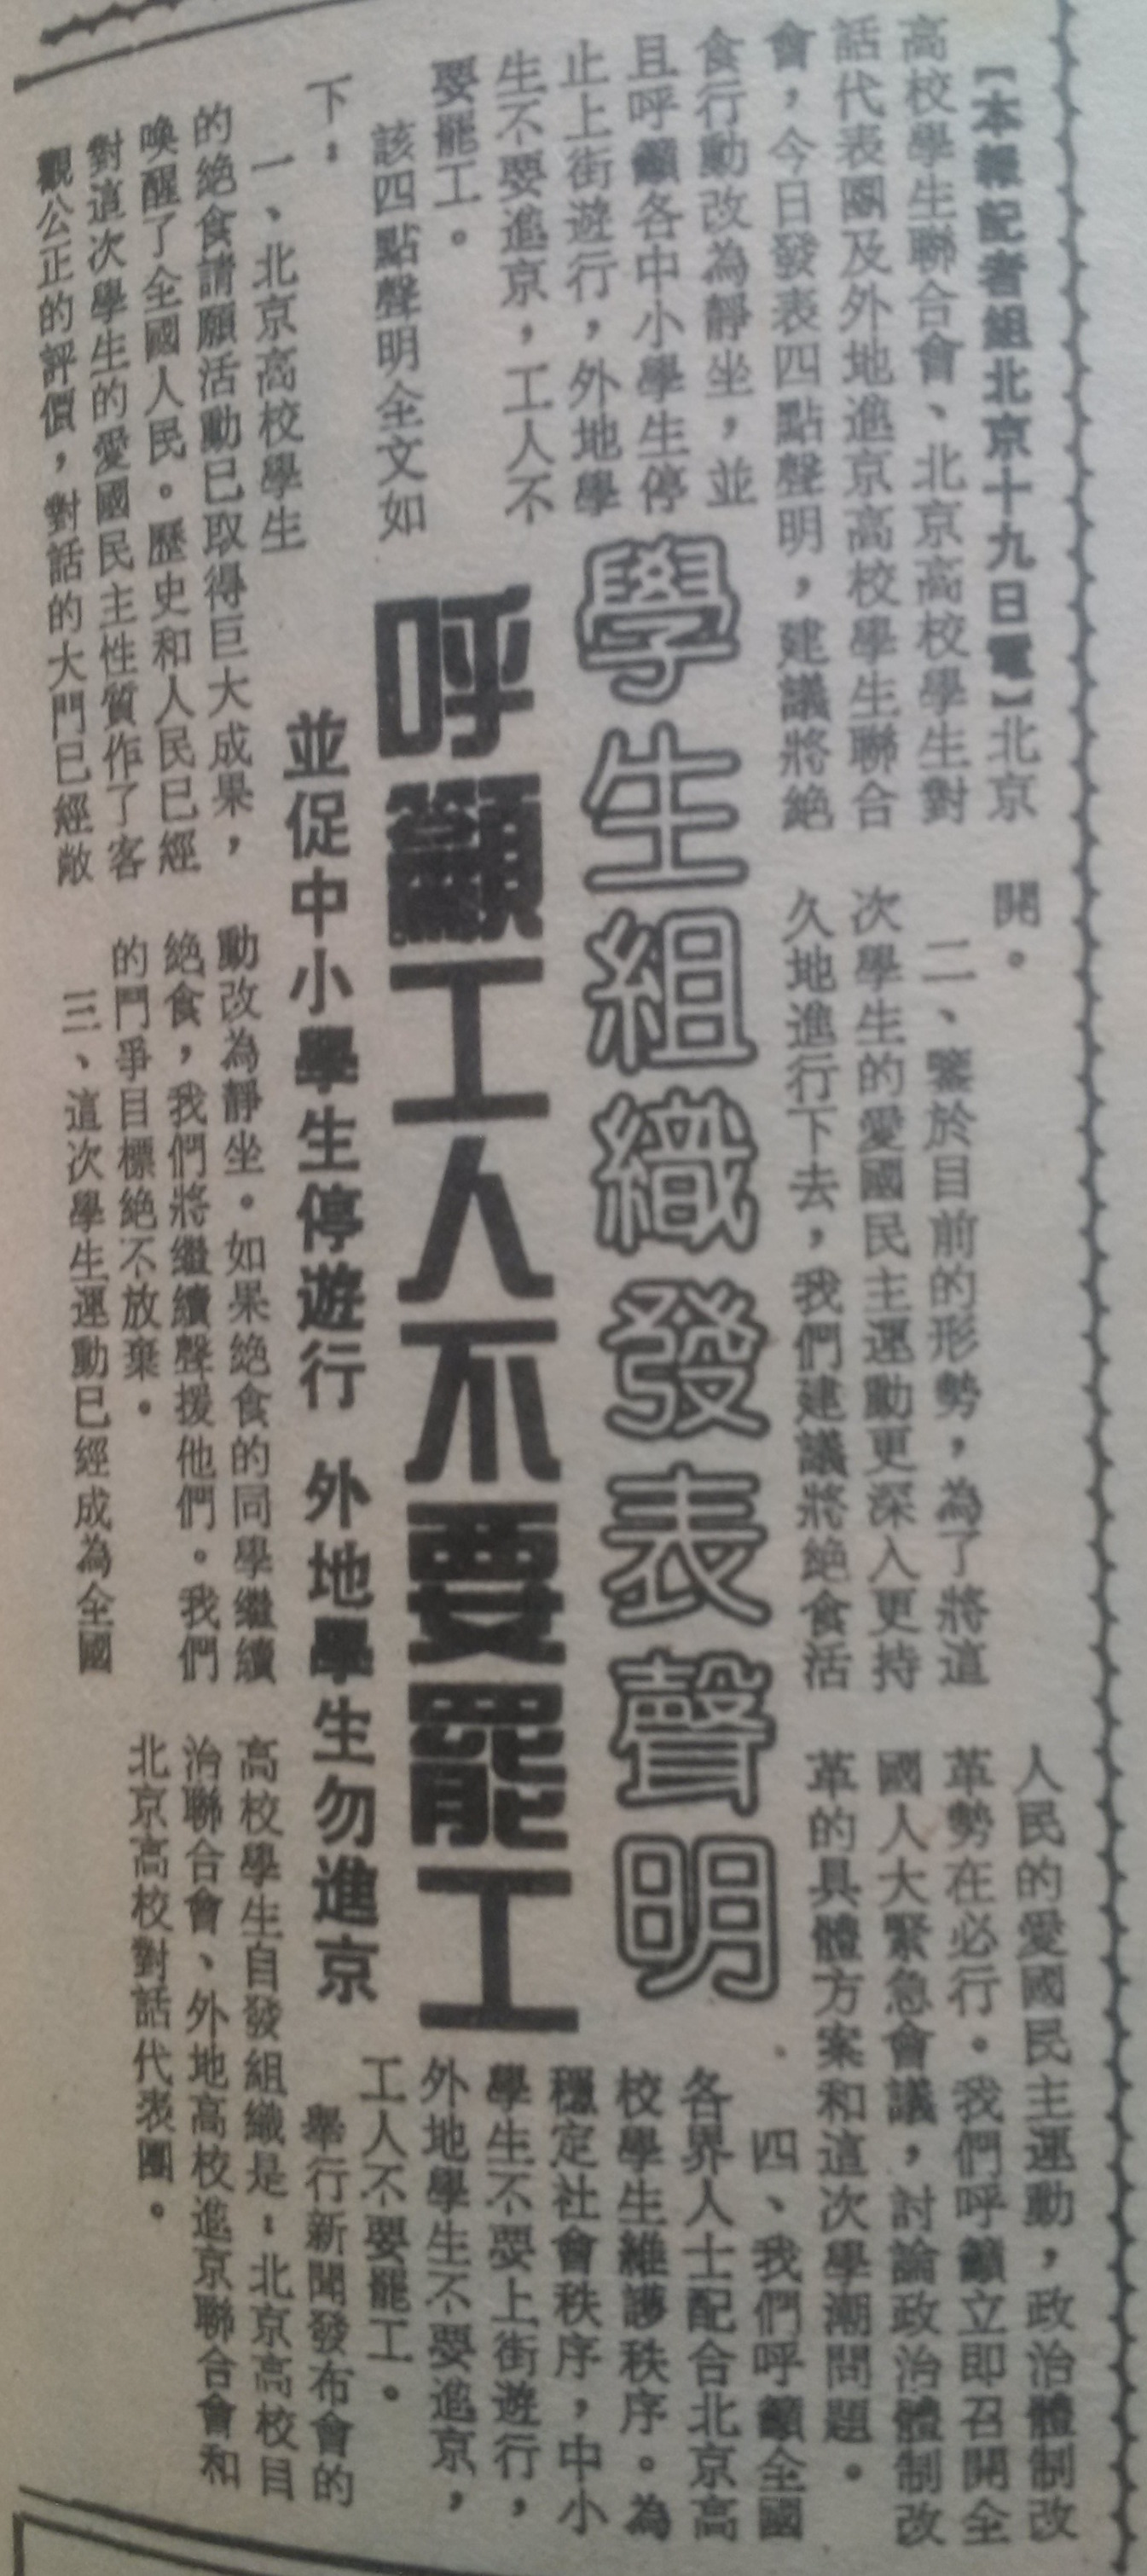 当时支持运动的香港《文汇报》在1989年5月20日的报导：部分学生团体举行新闻发布会，呼吁工人不要罢工。